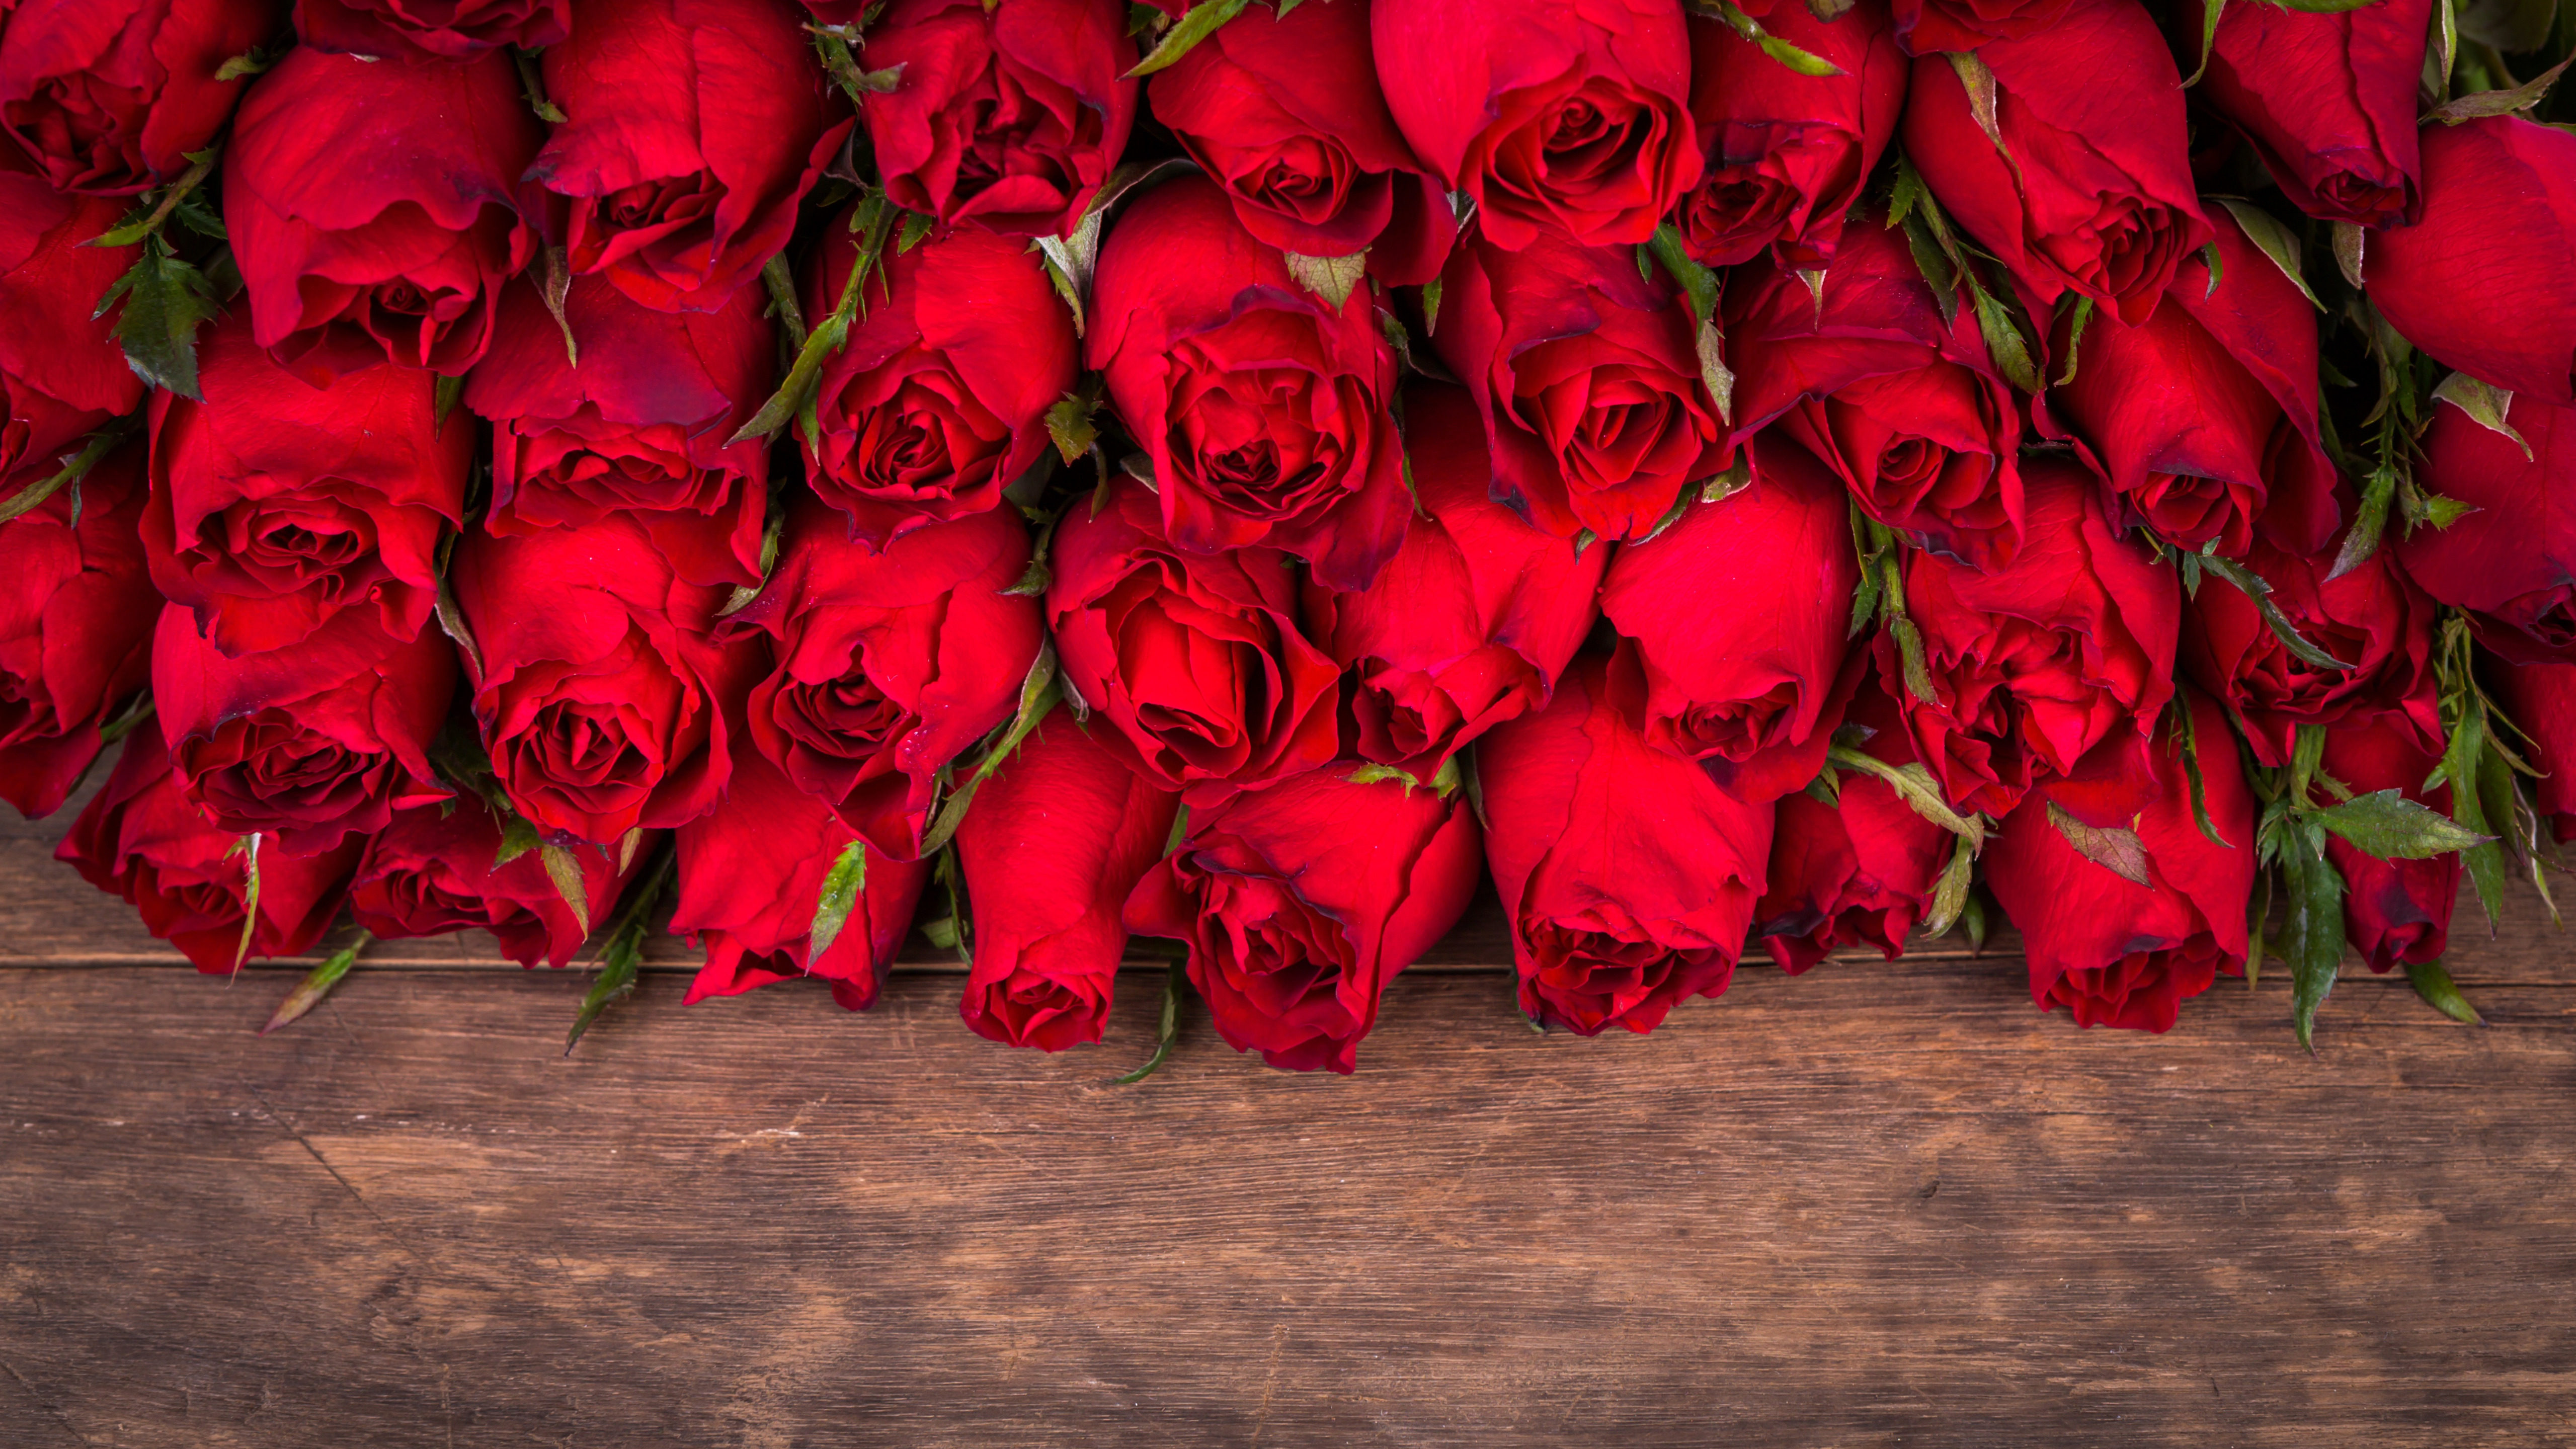 Поздравления днем рождения женщине видео красивые музыкальное. Поздравления с днём рождения розы. Открытки с днём рождения женщине. С днем рождения женщине открытка розы. Открытки с днём рождения женщине красные розы.